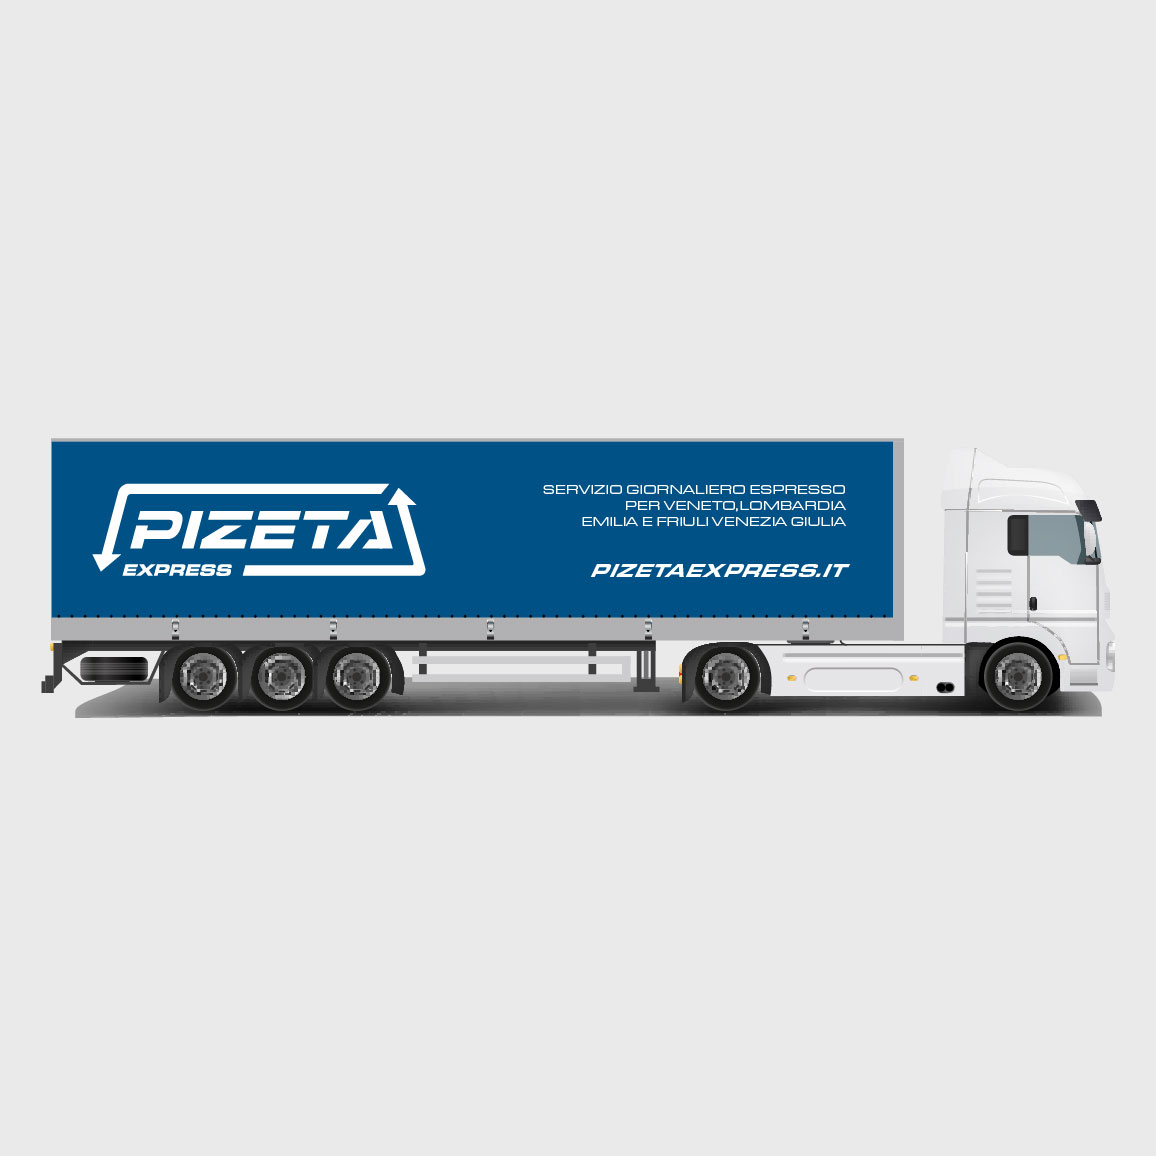 camion pizeta express